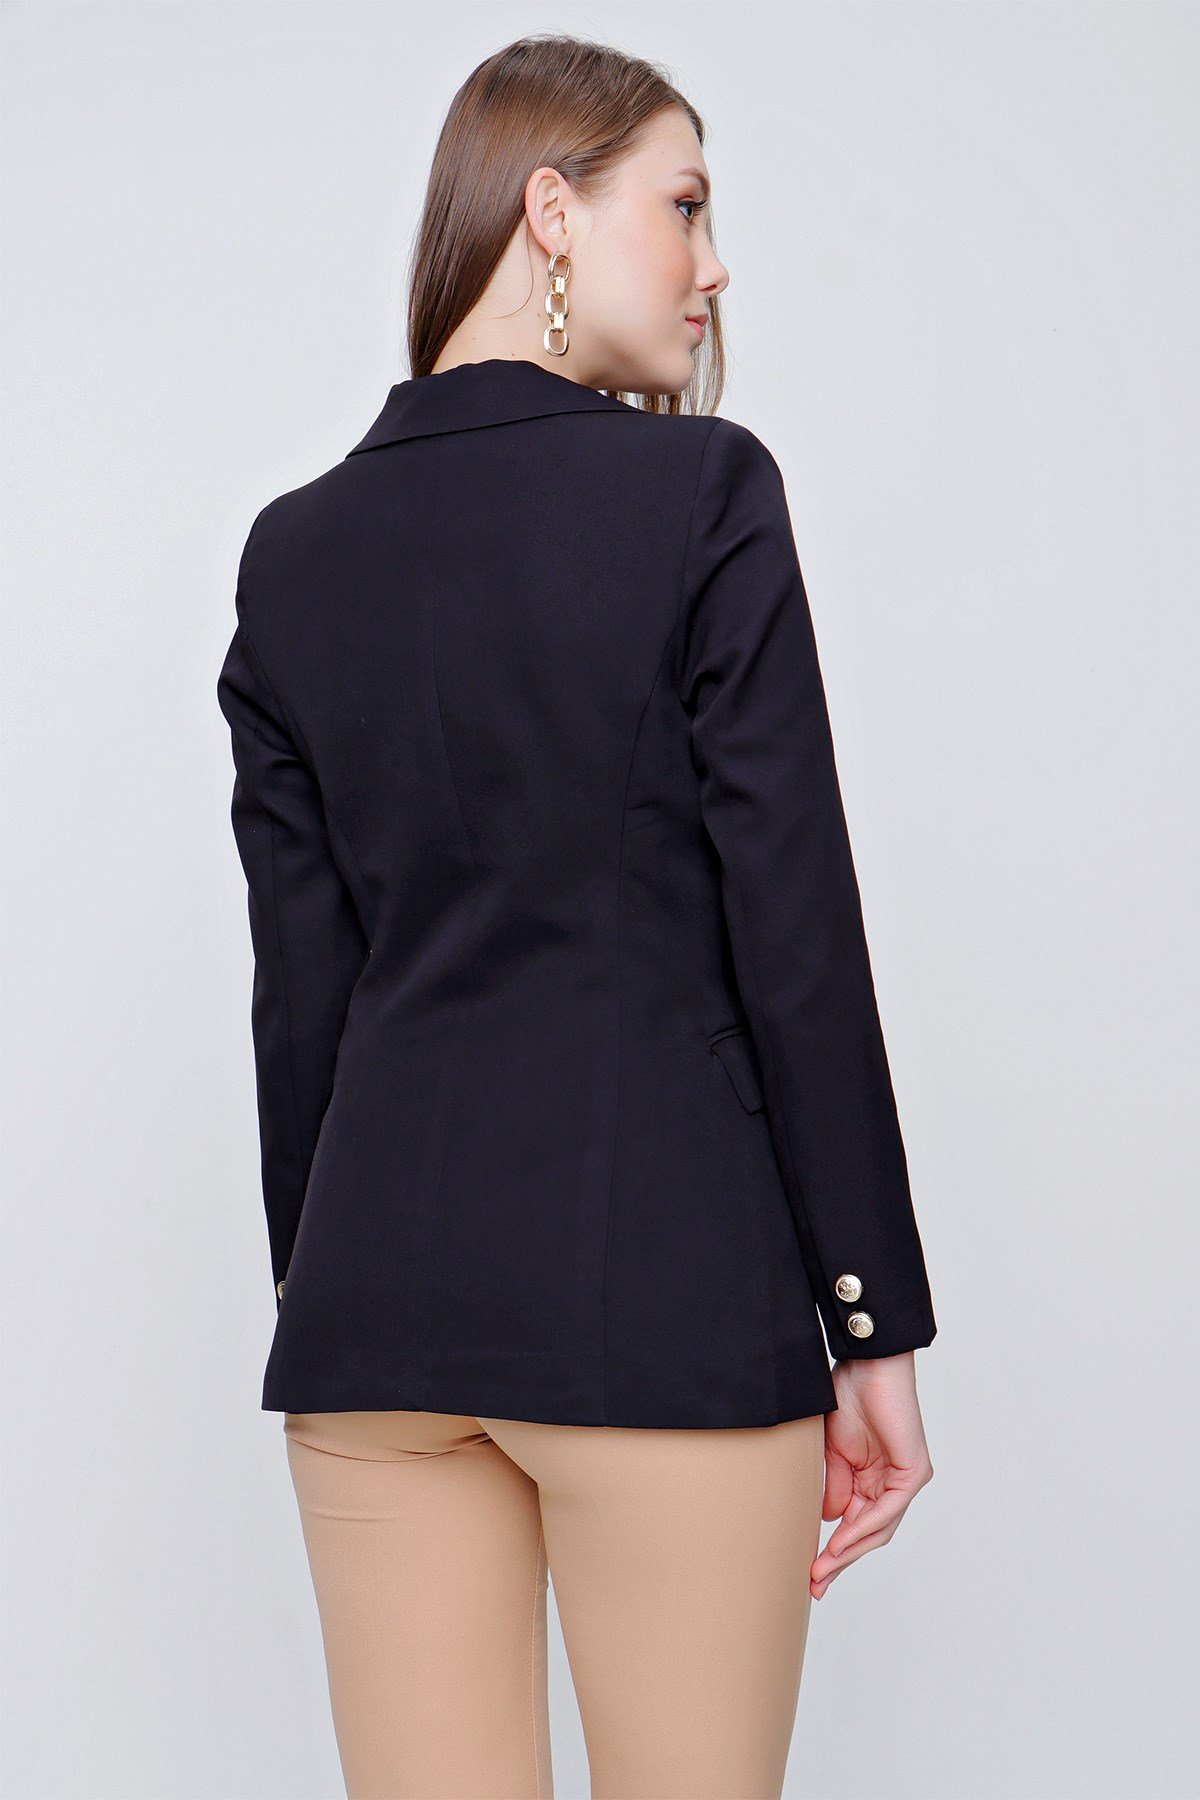 Kadın Siyah Kruvaze Yaka Blazer Ceket - Butik Buruç